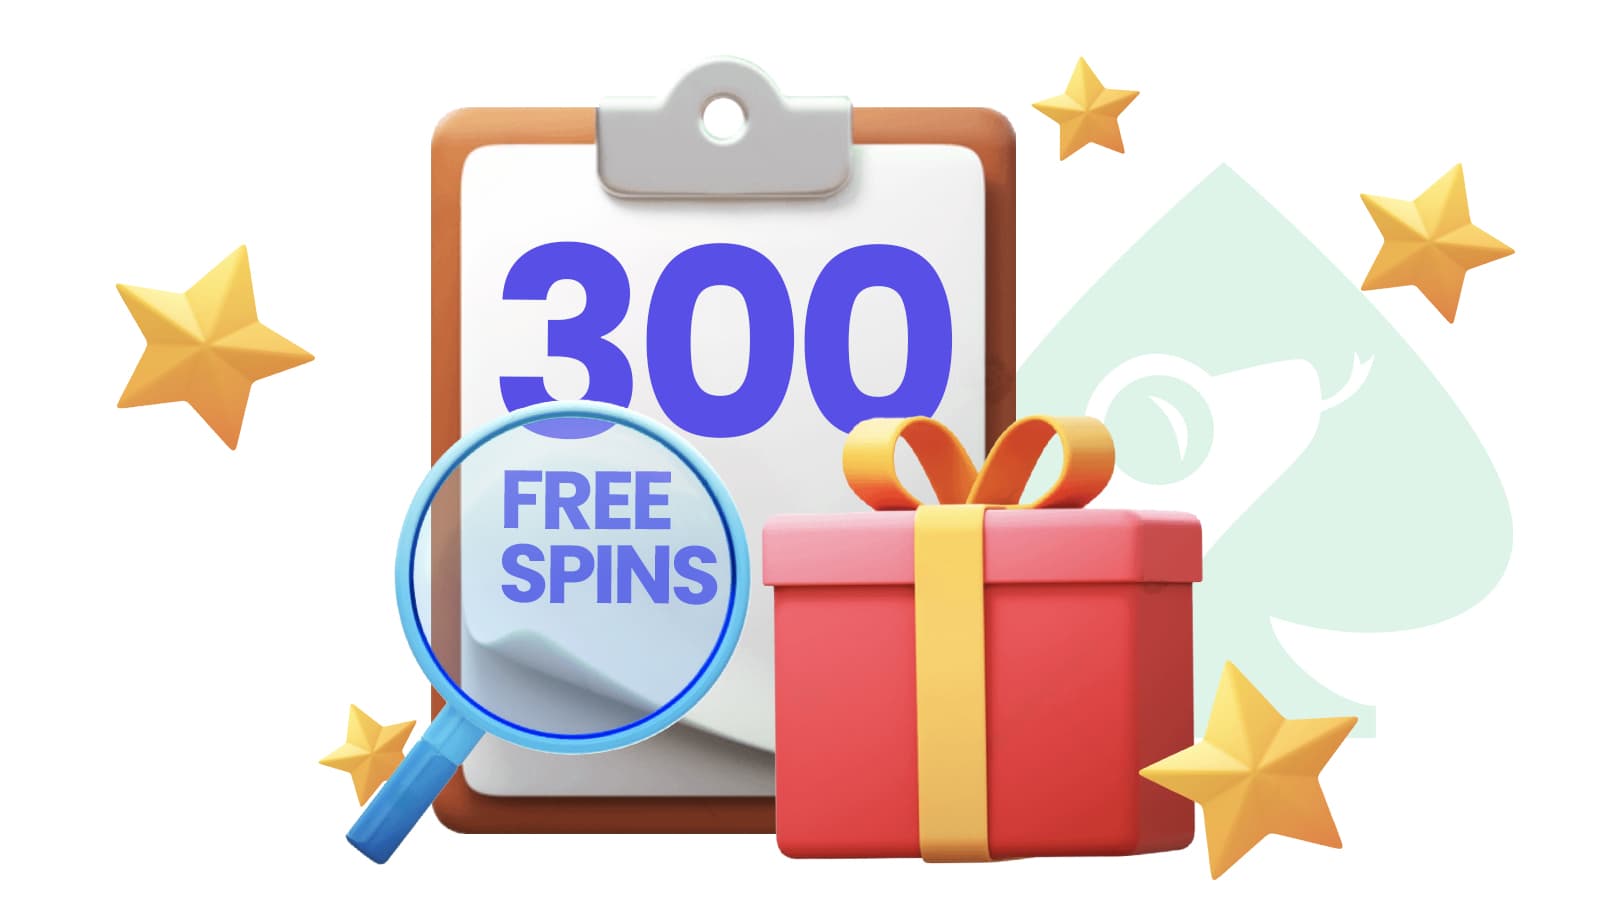 300 free spins online casino